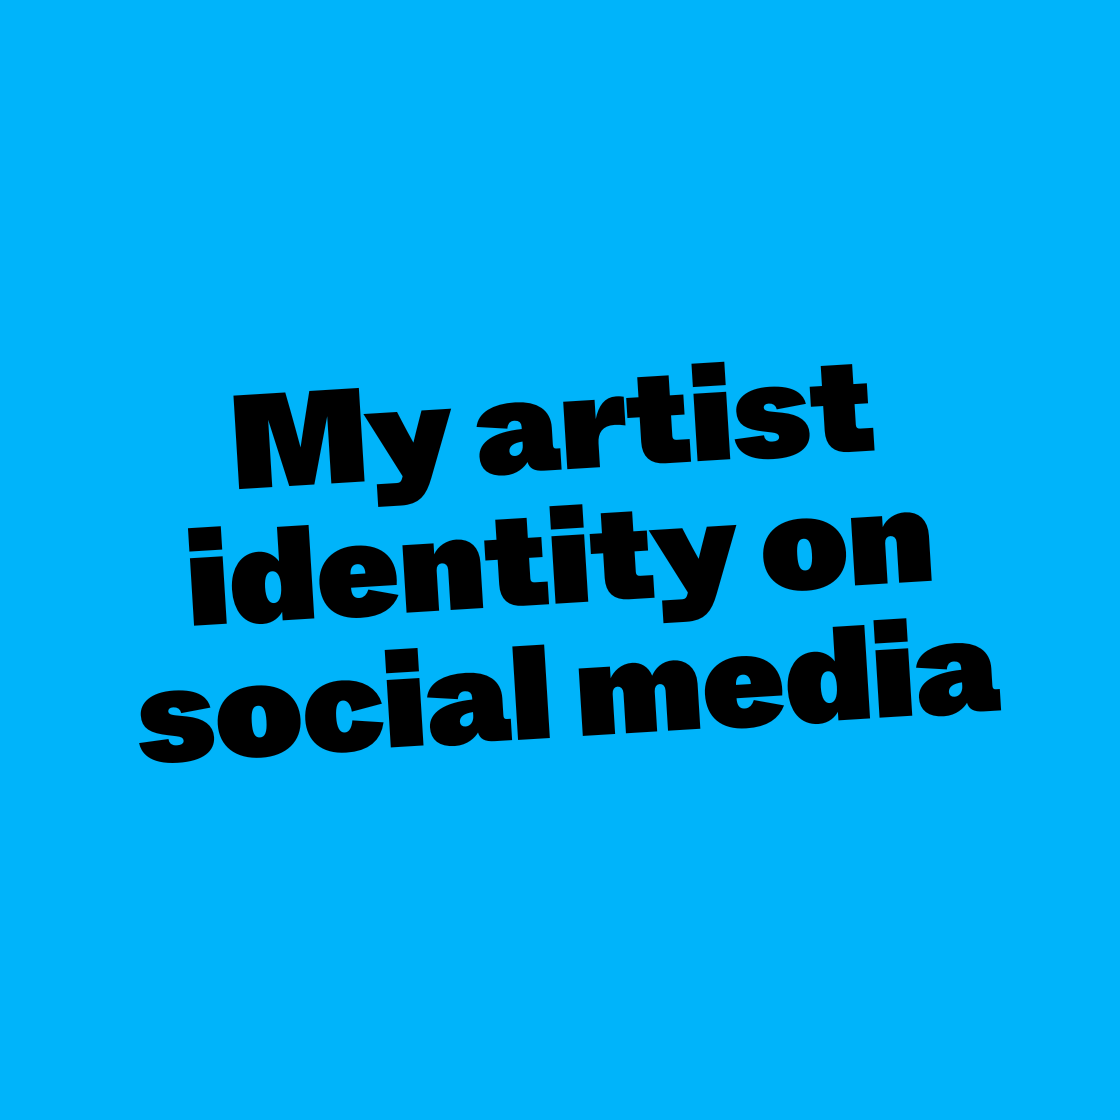 My artist identity on social media